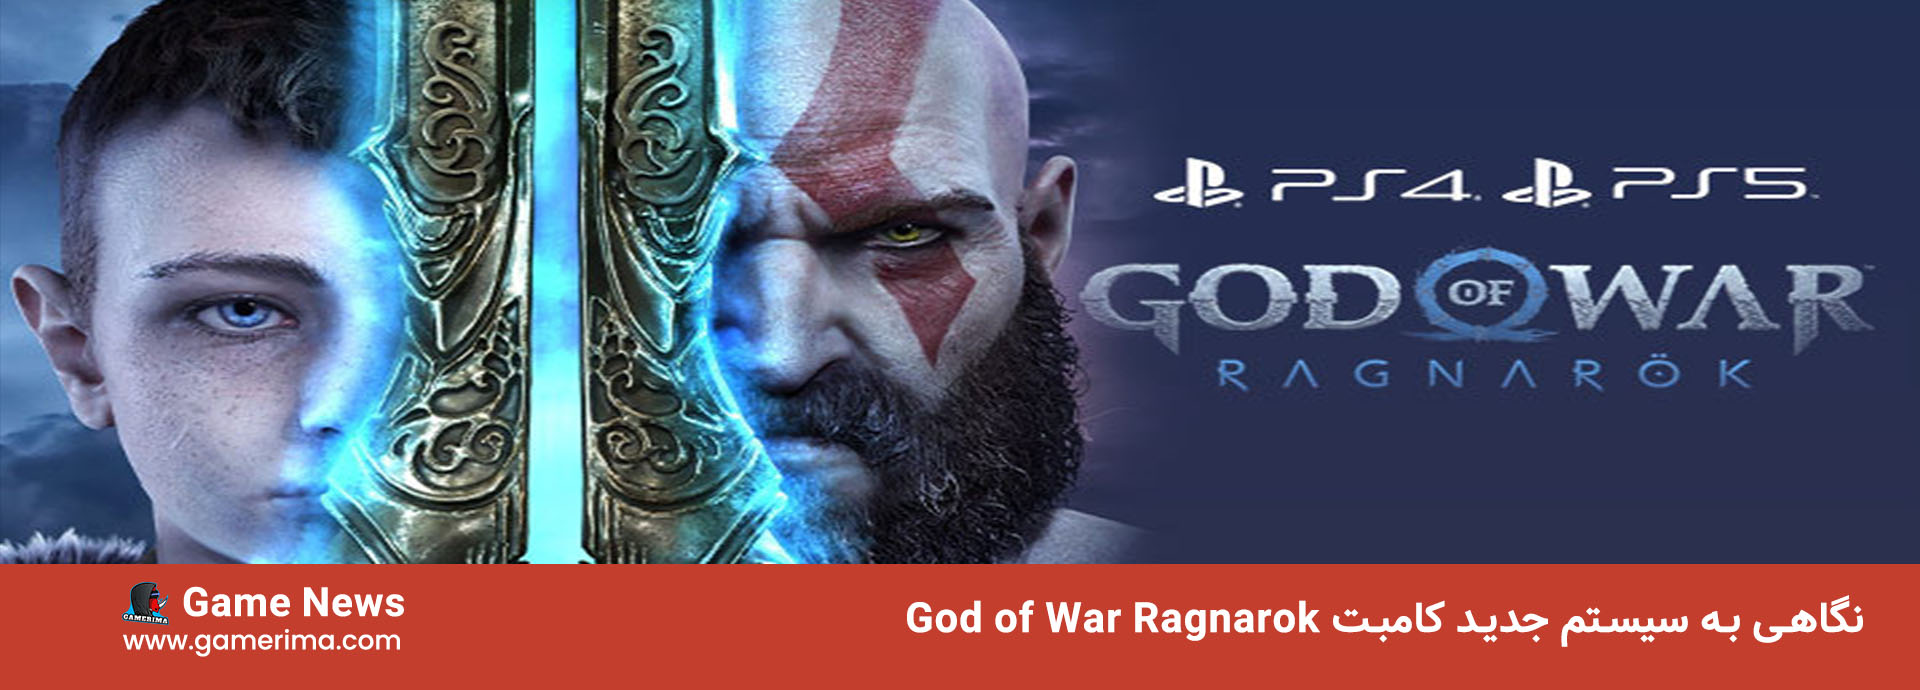 God of War Ragnarok Combat System